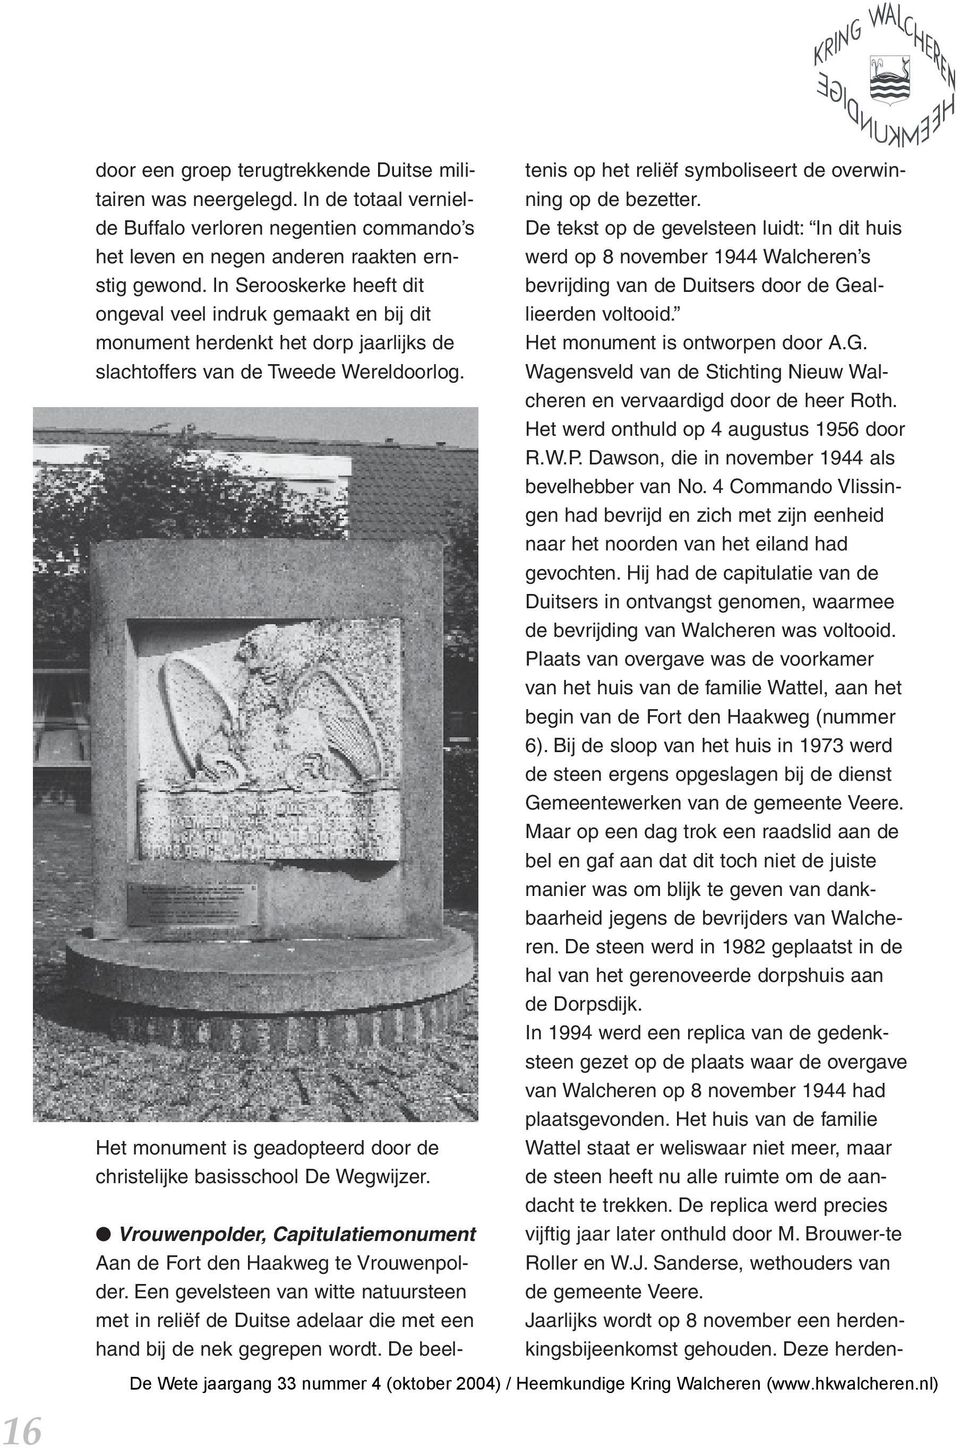 Het monument is geadopteerd door de christelijke basisschool De Wegwijzer. Vrouwenpolder, Capitulatiemonument Aan de Fort den Haakweg te Vrouwenpolder.